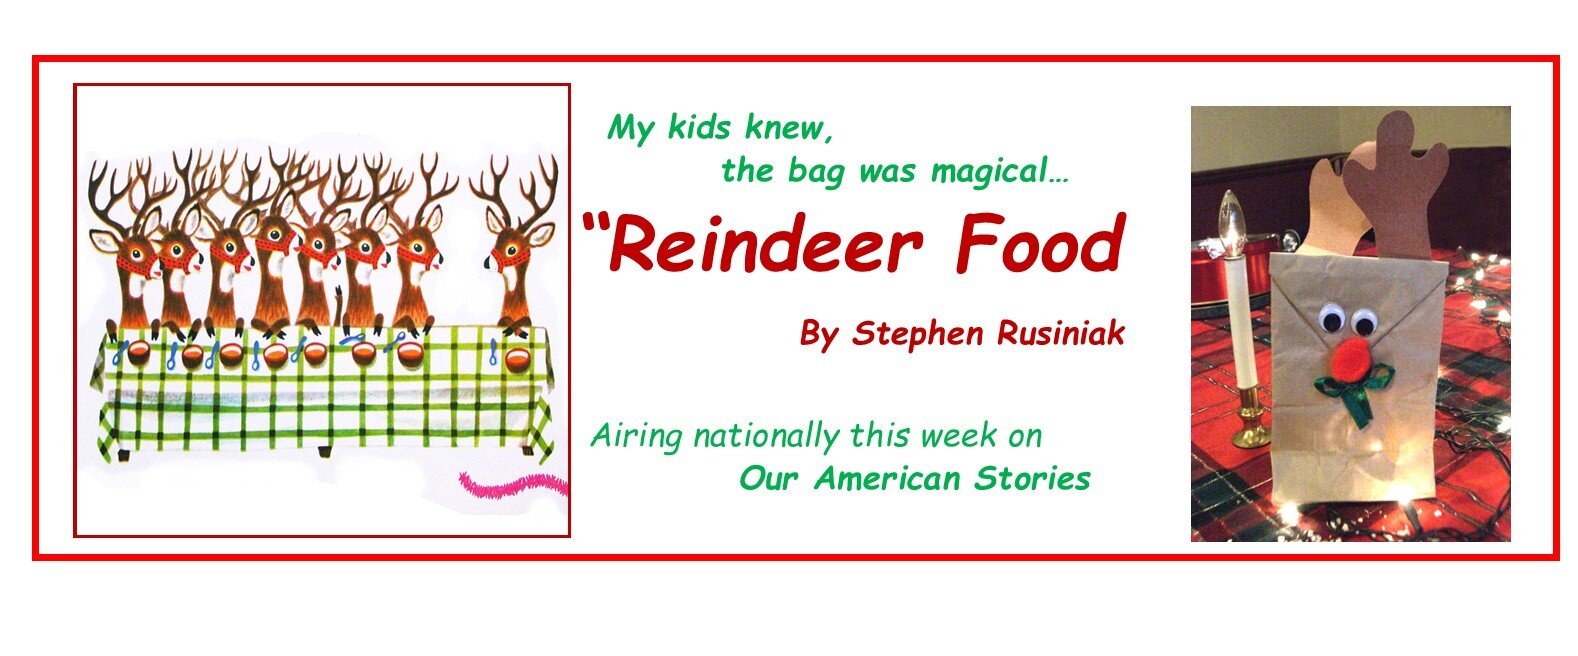 Reindeer Food promo.jpg